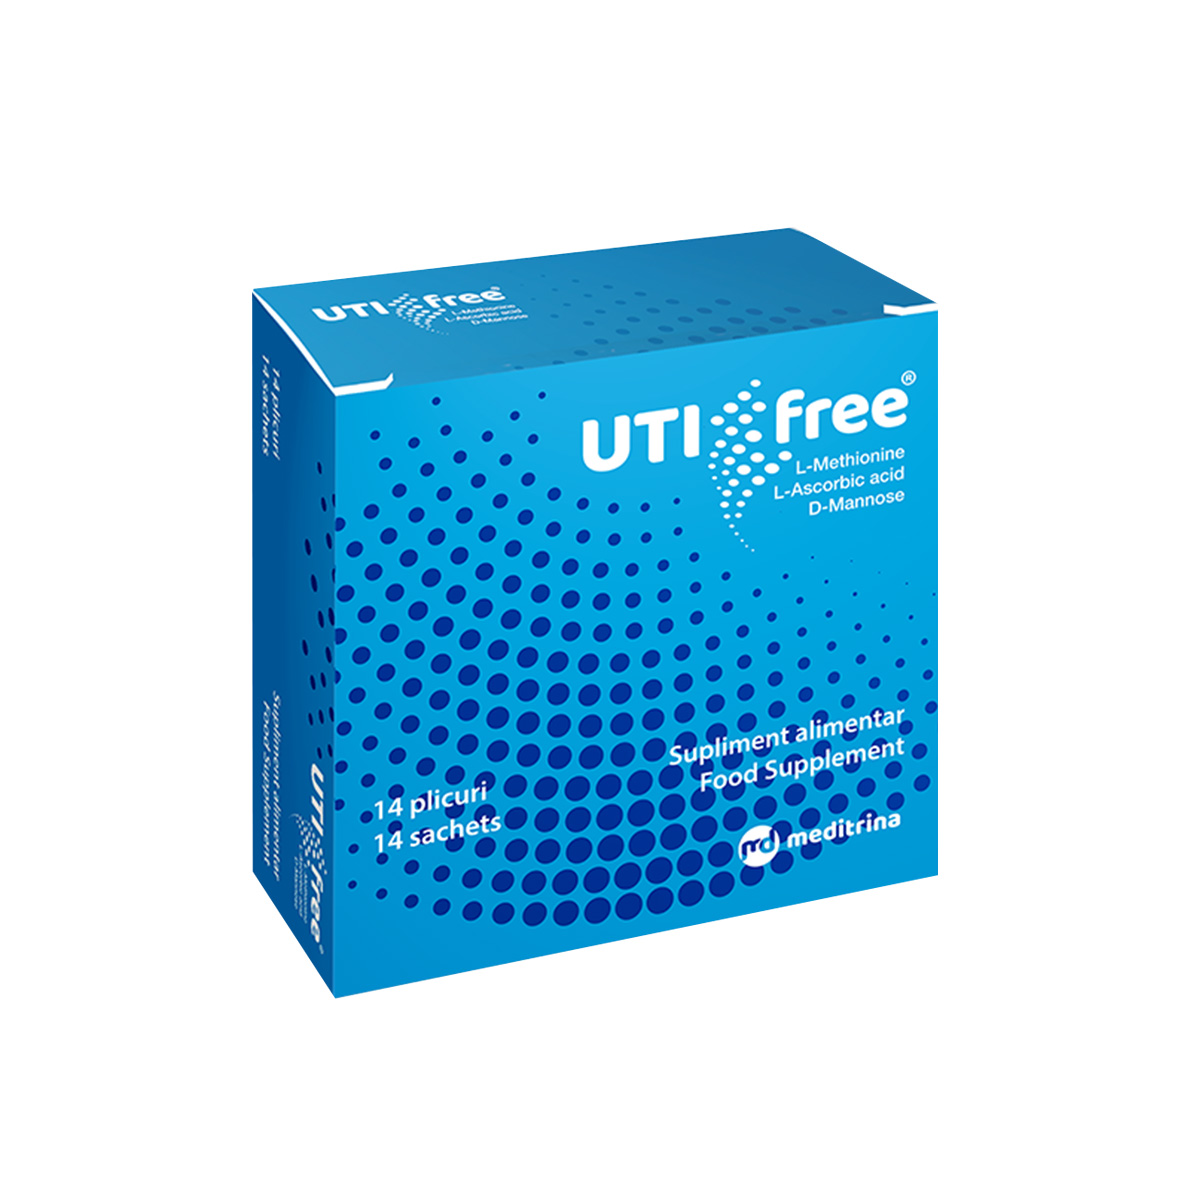 Dezinfectante urinare - Uti-free, 14 plicuri, Meditrina Pharmaceuticals, sinapis.ro